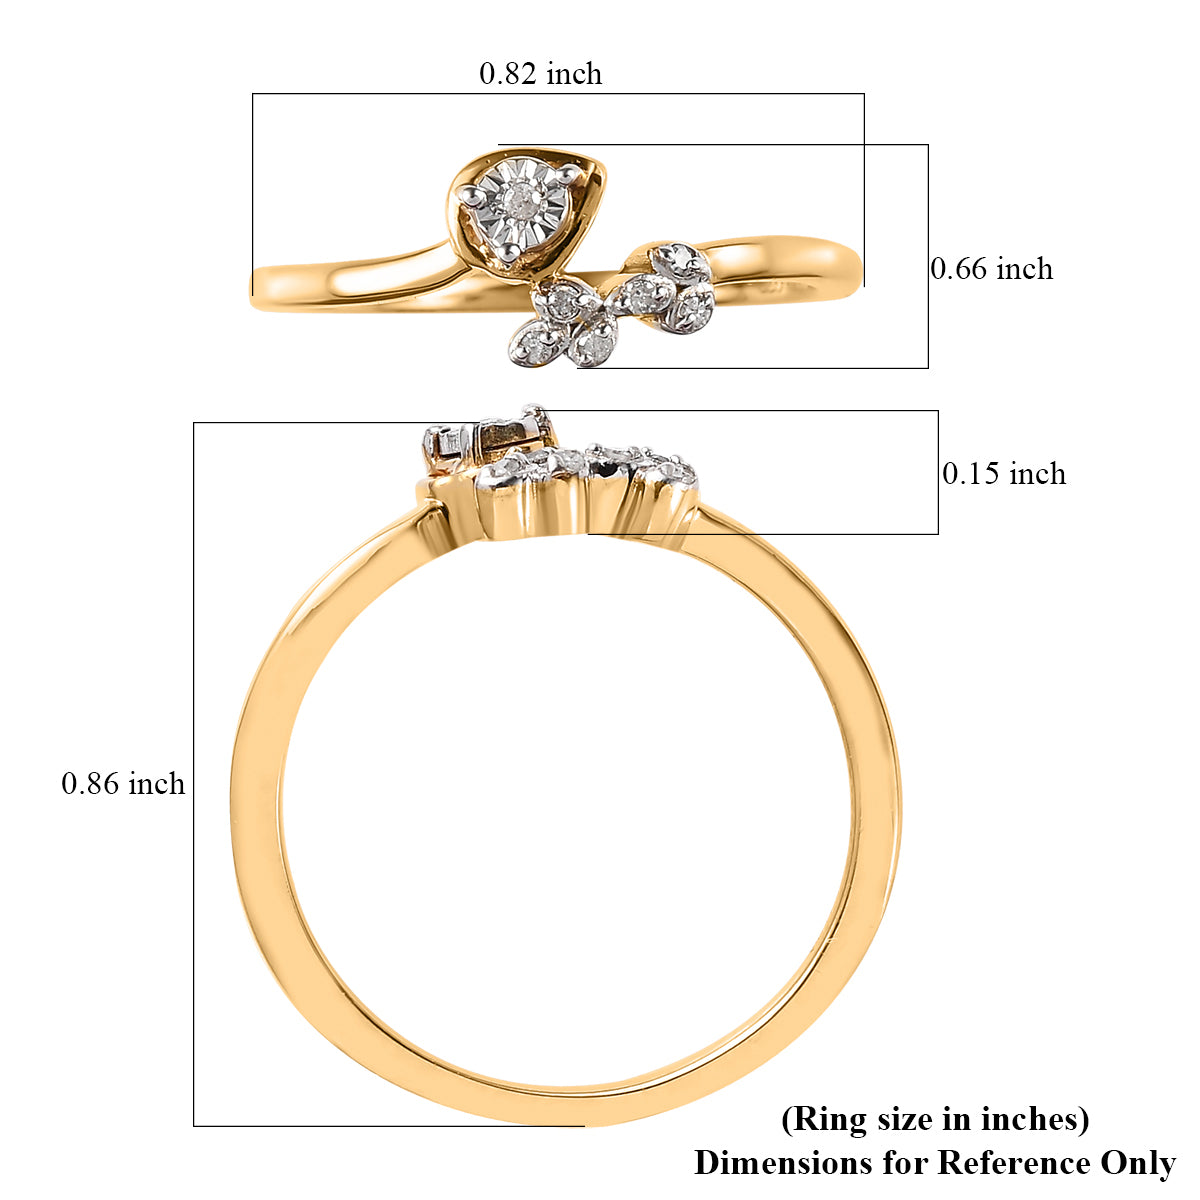 Pozlacený Stříbrný Prsten s Bílým Diamantem